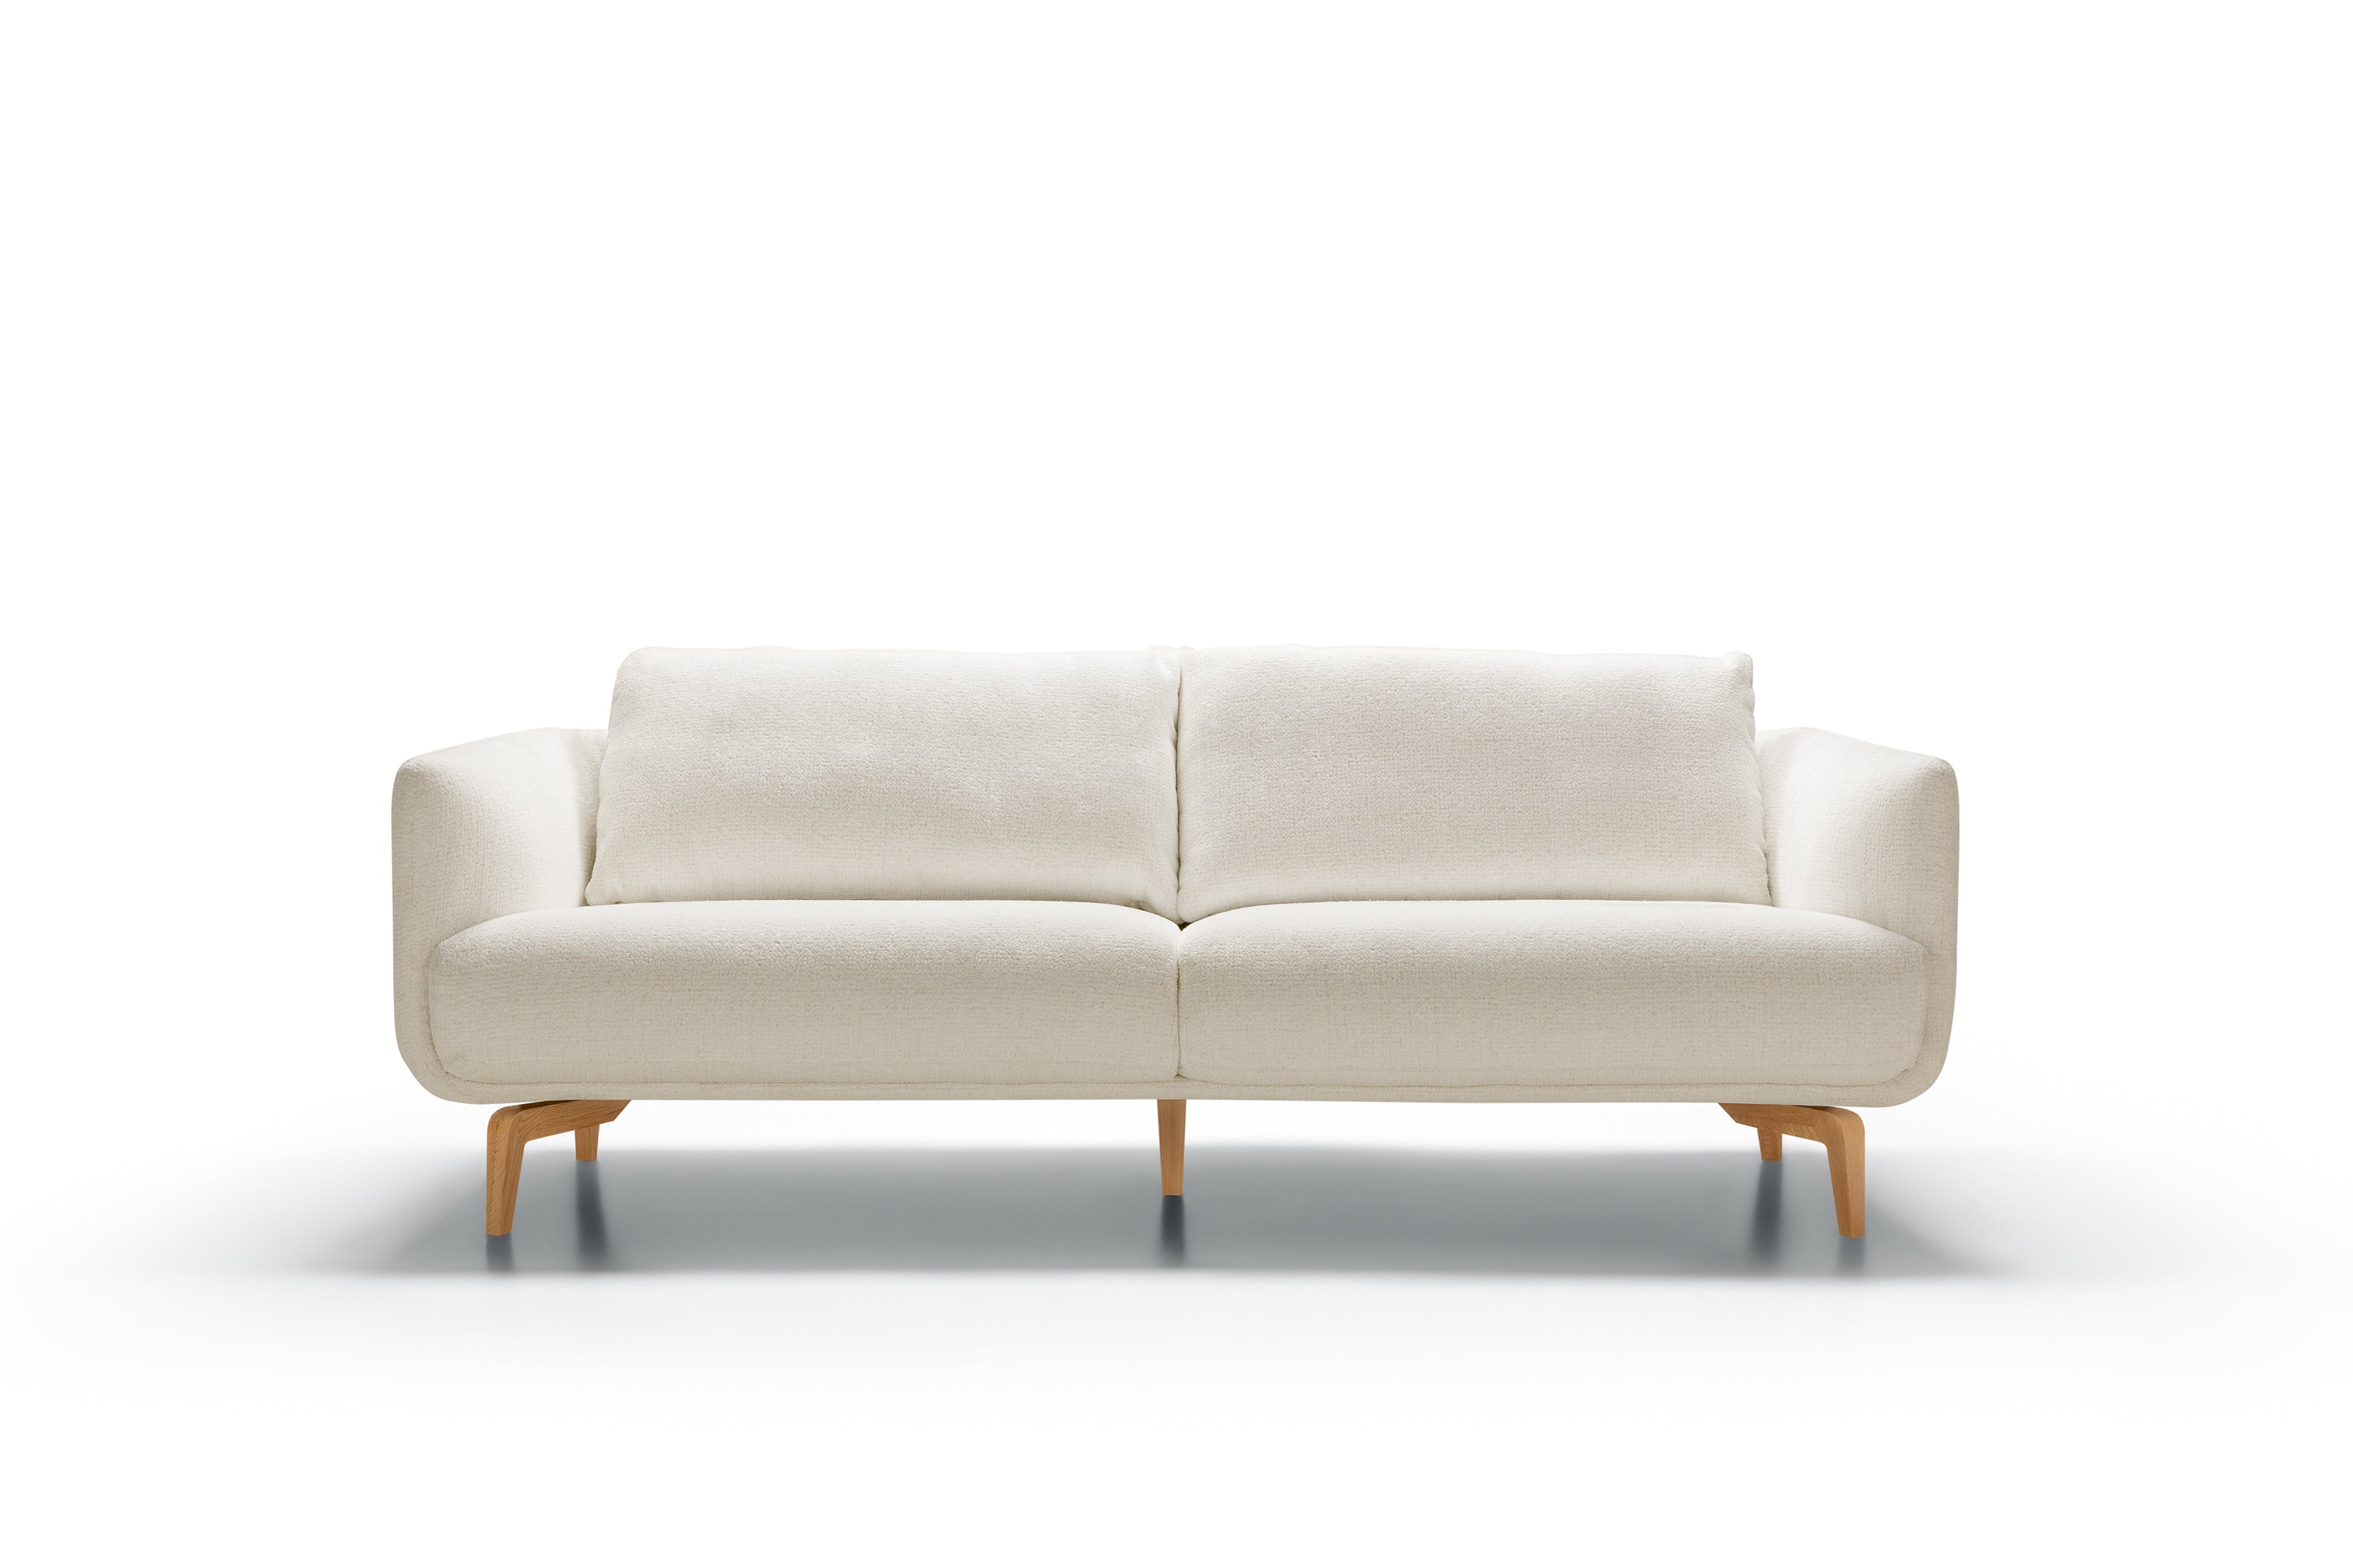 Mastrella Murano 3 Seater Sofa